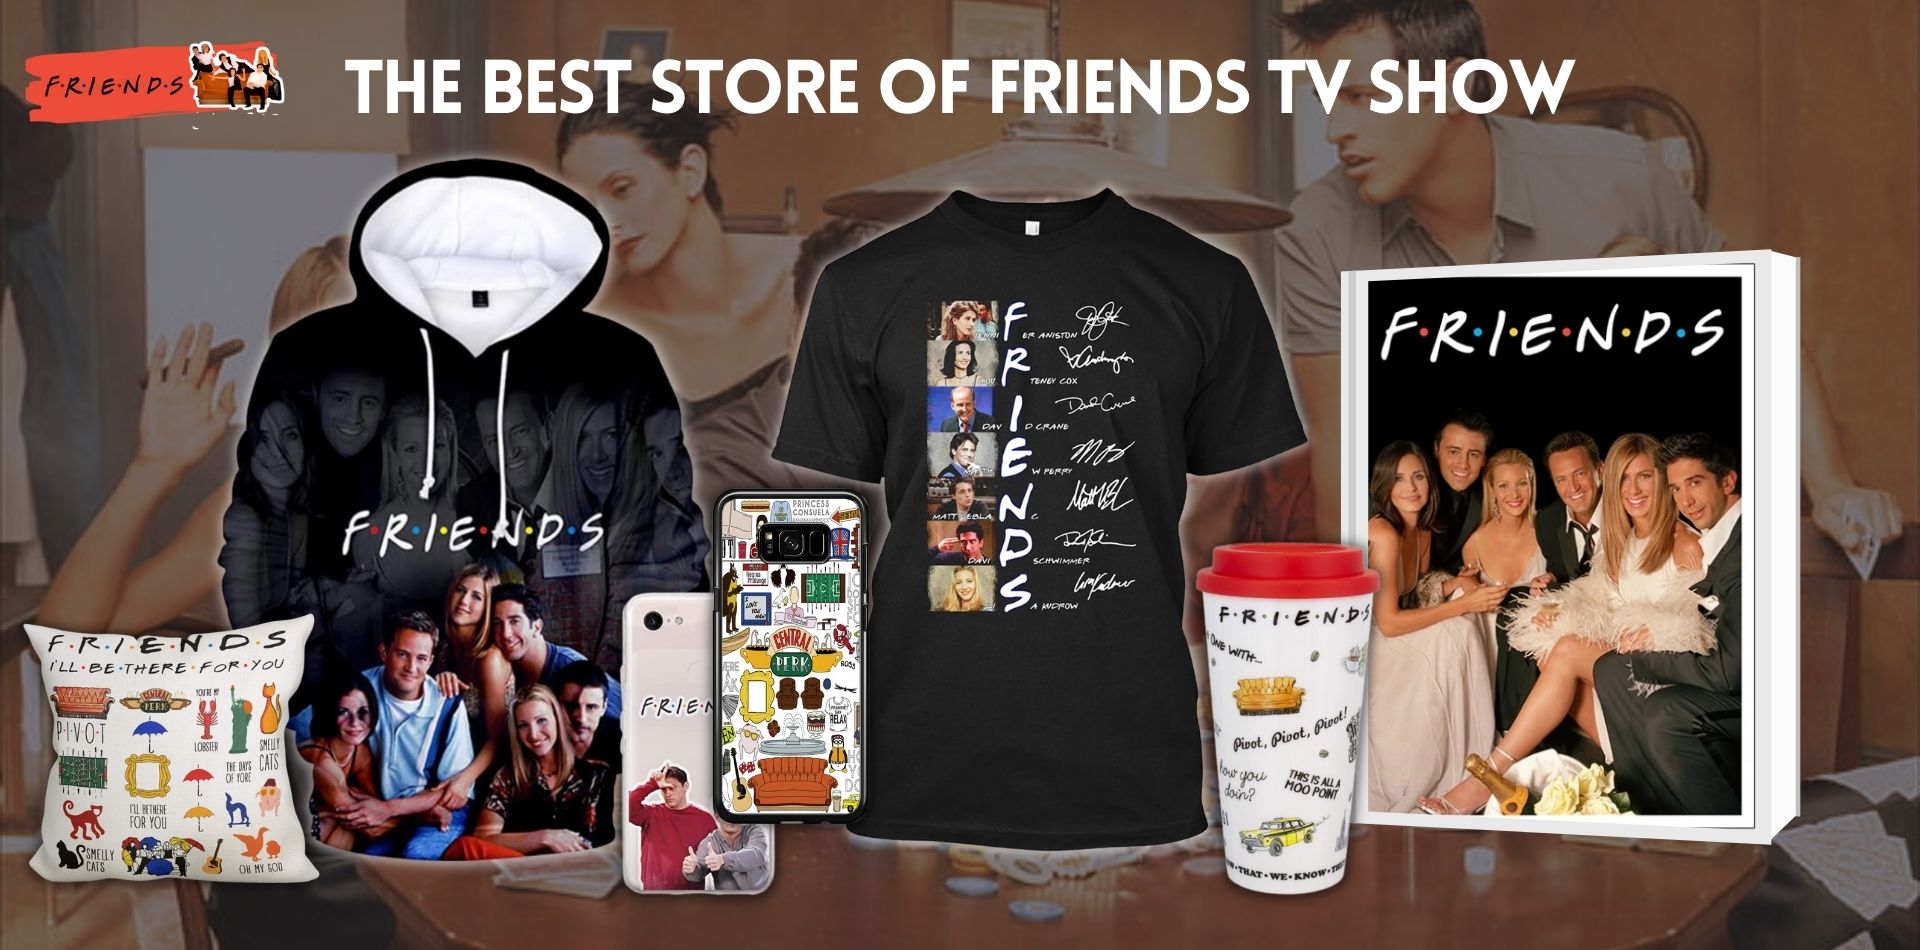 Friends TV show Shop Banner - Friends TV Show Shop